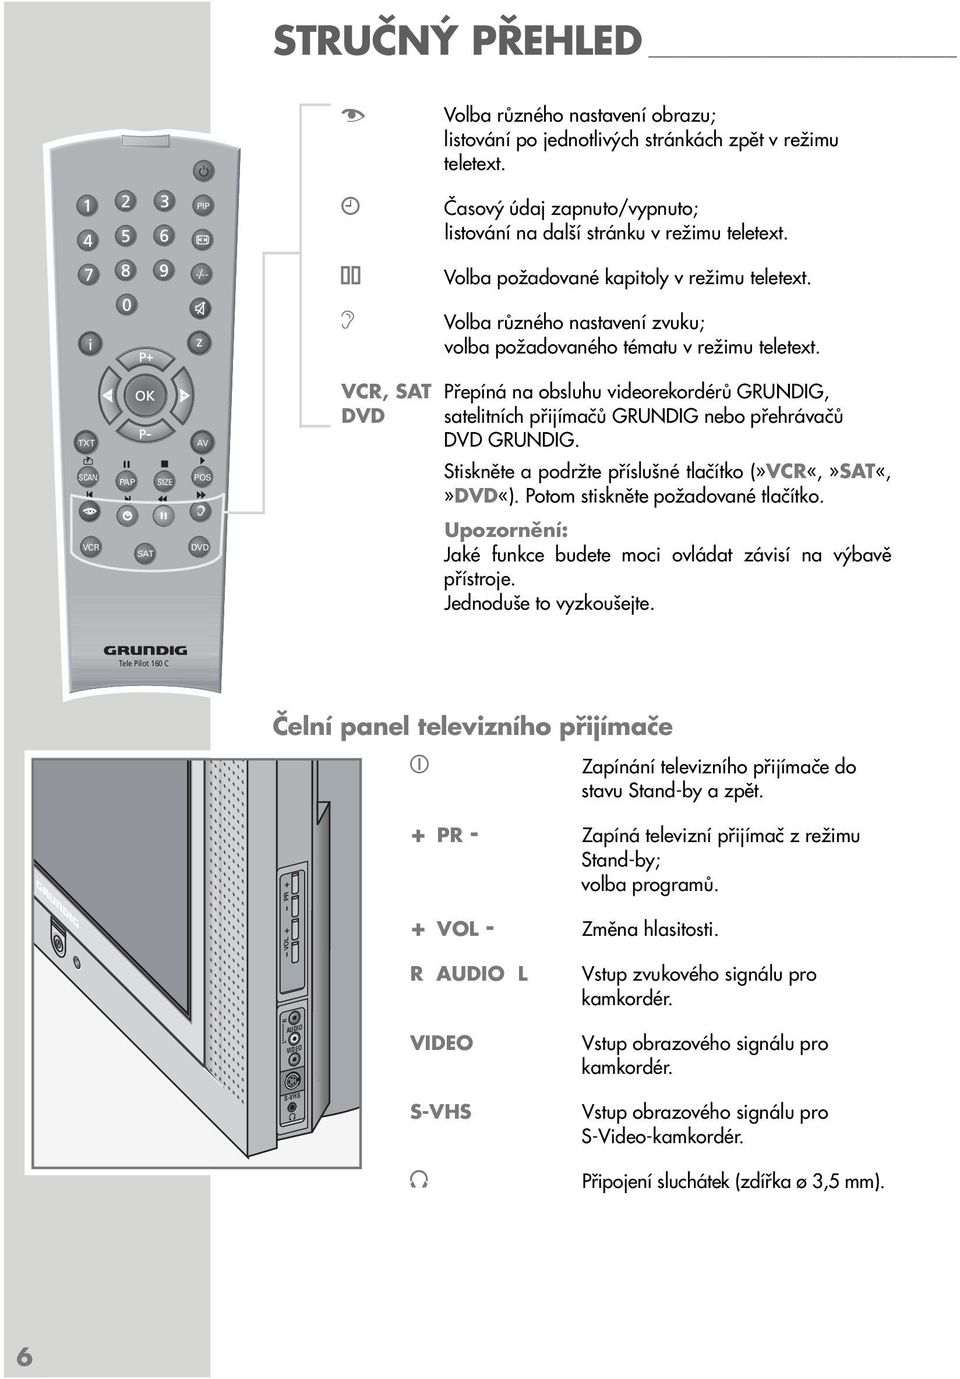 TXT SCAN VCR PAP SAT SIZE AV POS d DVD VCR, SAT Přepíná na obsluhu videorekordérů GRUNDIG, DVD satelitních přijímačů GRUNDIG nebo přehrávačů DVD GRUNDIG.